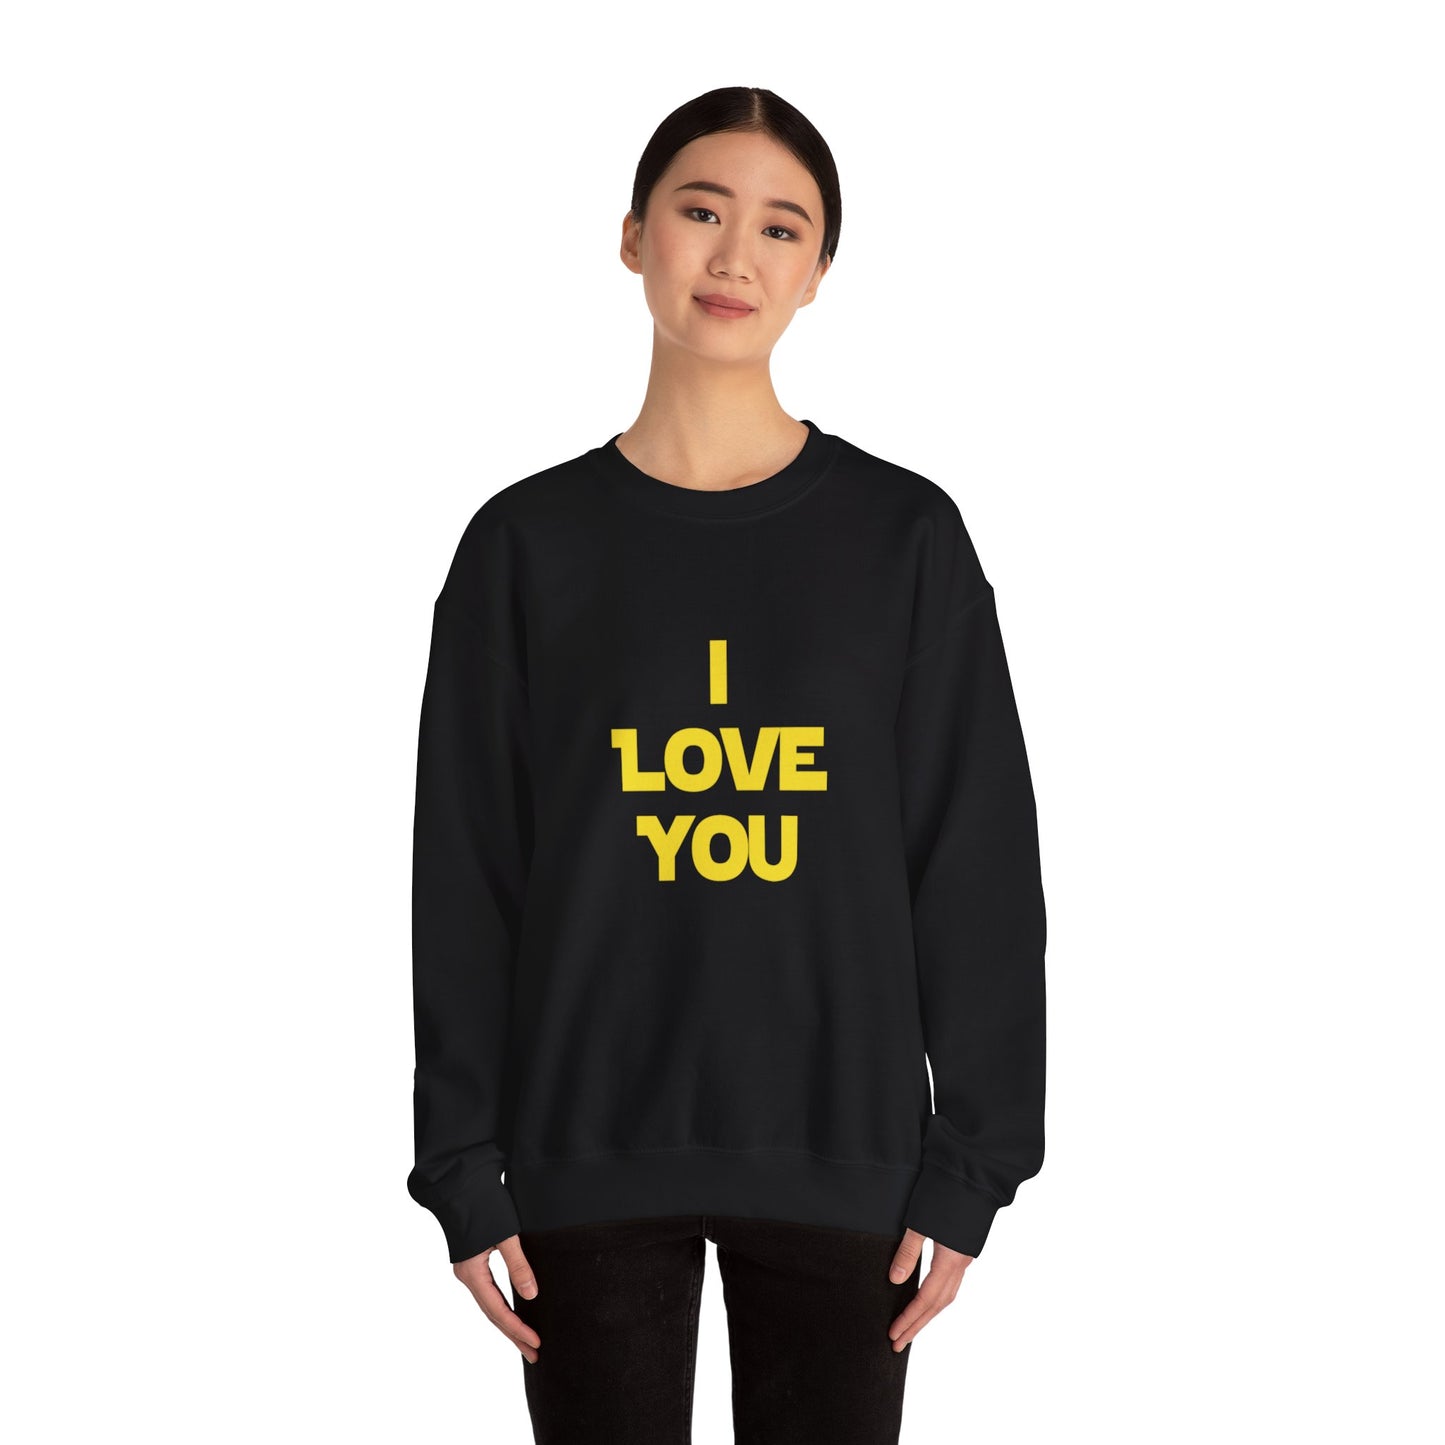 I LOVE YOU, I KNOW Sweatshirt